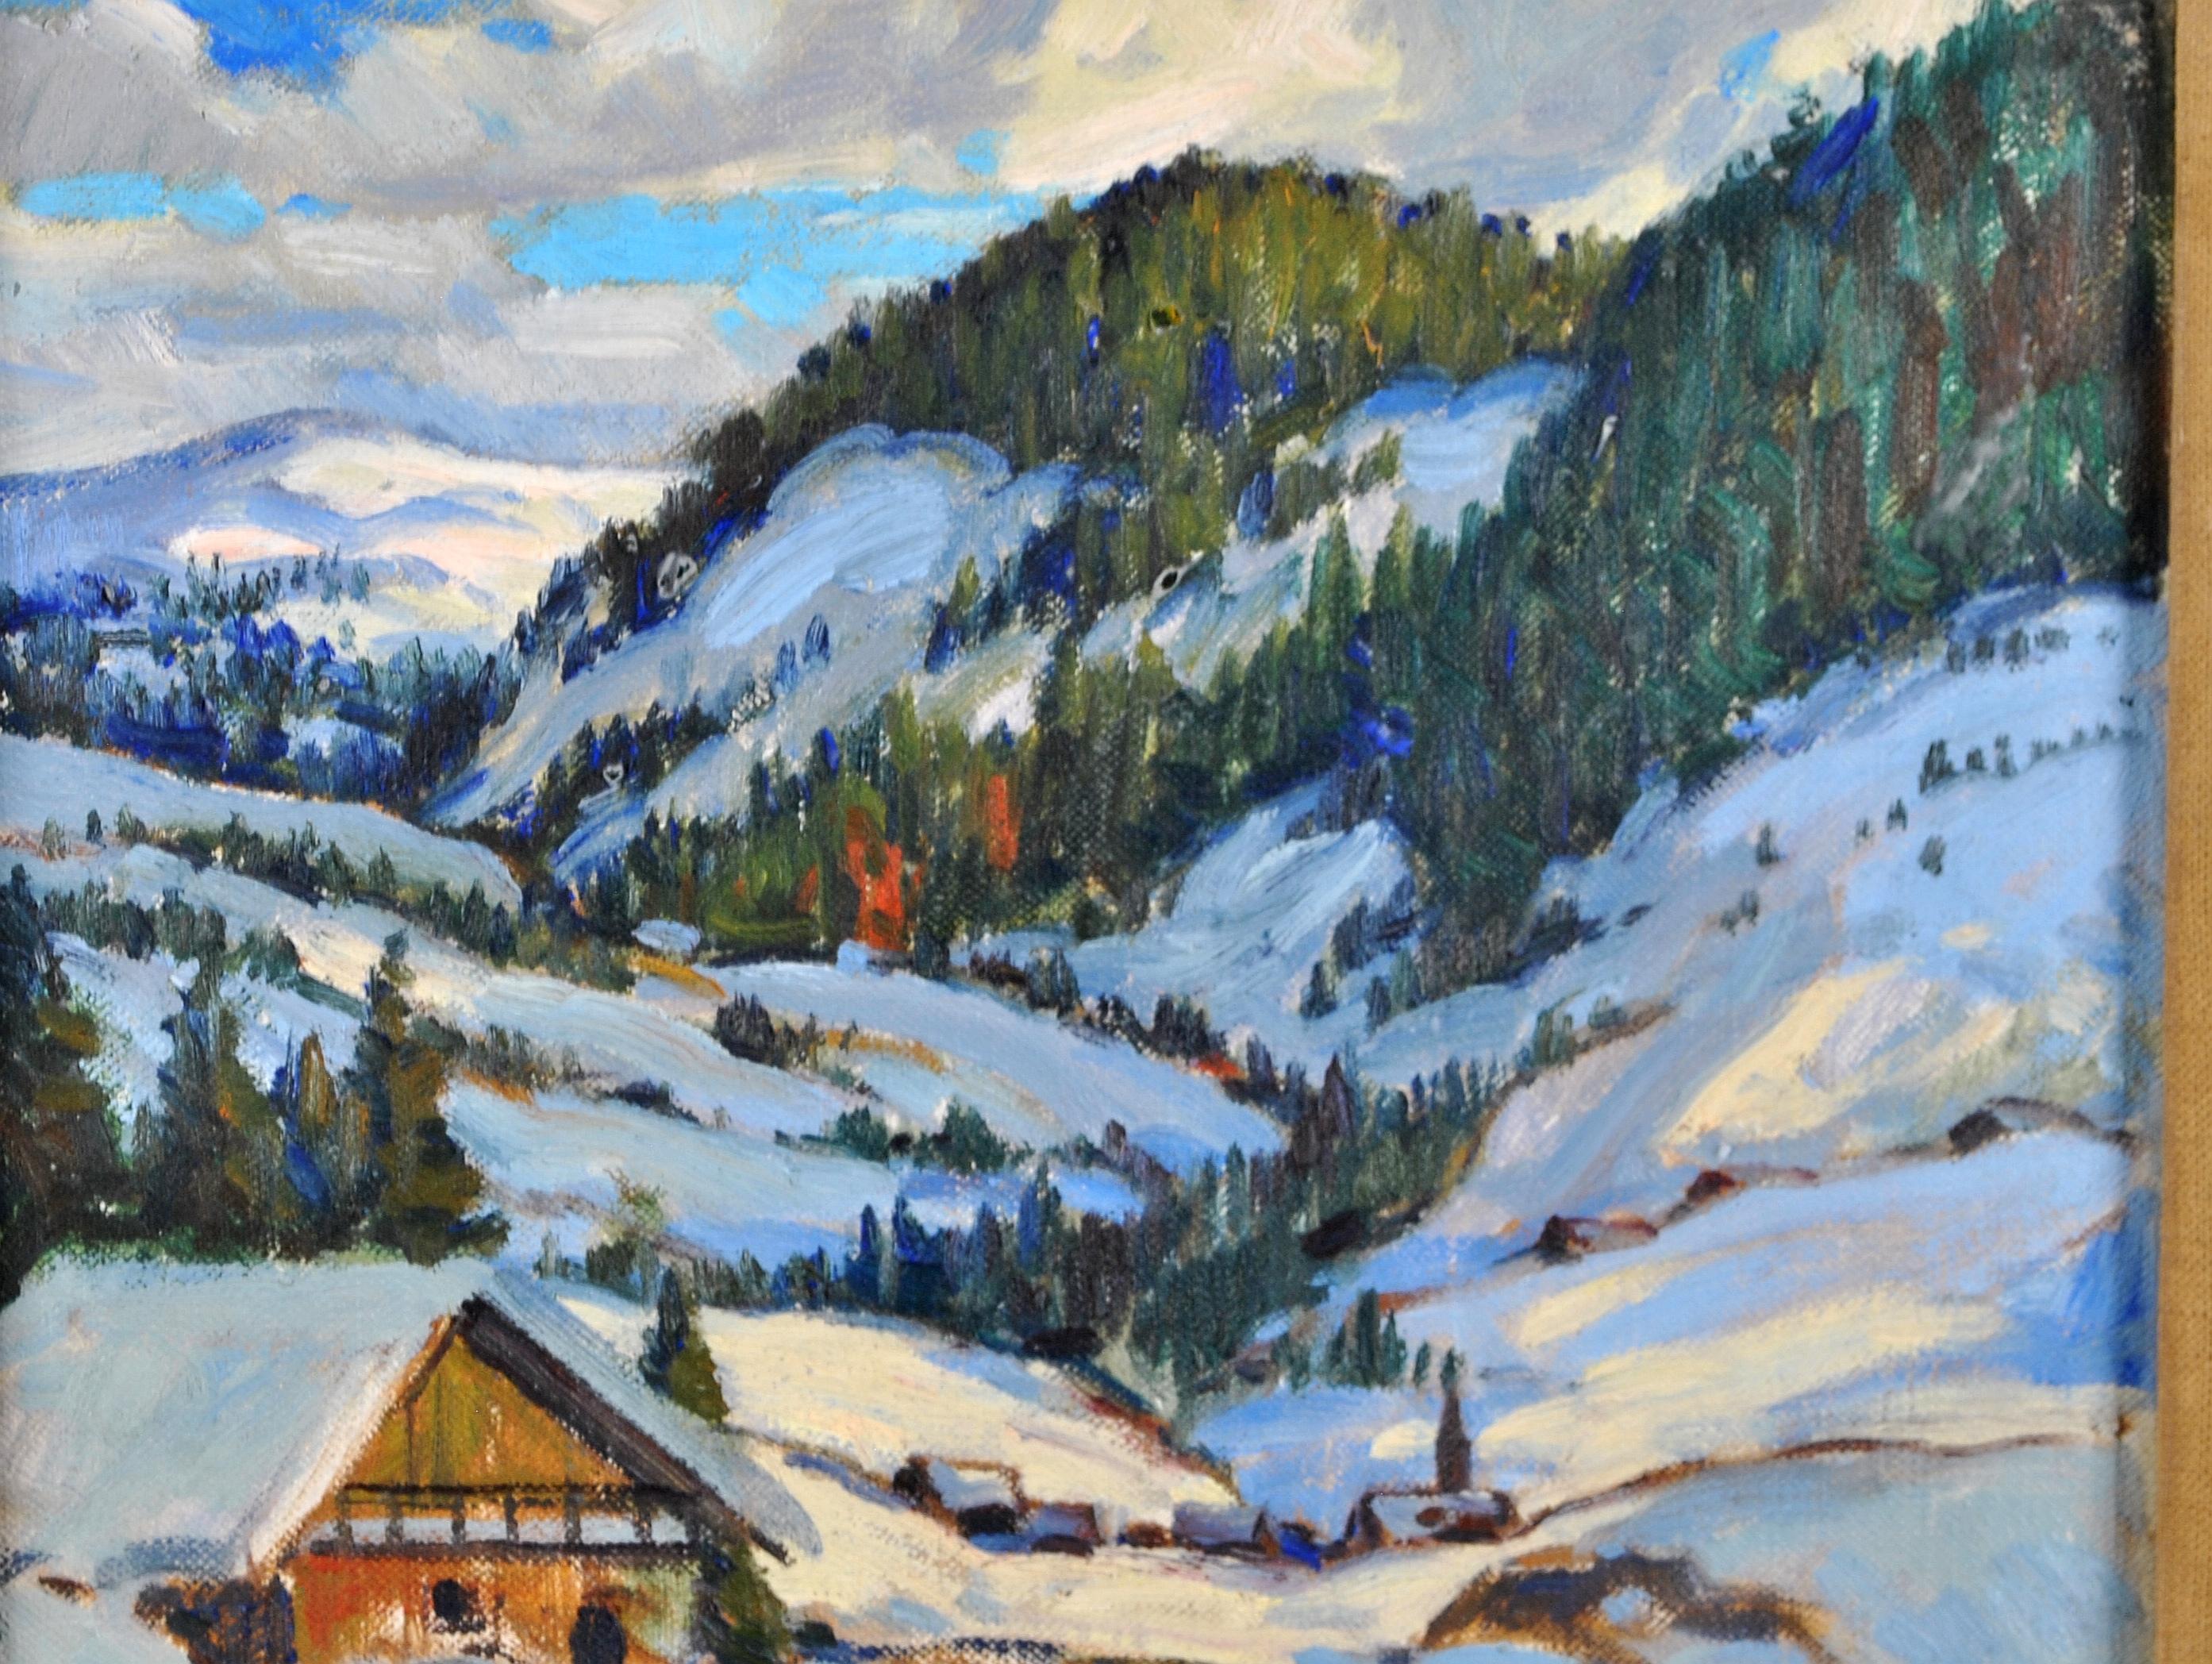 Alpine Landschaft - Impressionistisches kanadisches Ölgemälde, Schnee-Winter-Gemälde des 20. Jahrhunderts (Impressionismus), Painting, von Adolphus George Broomfield